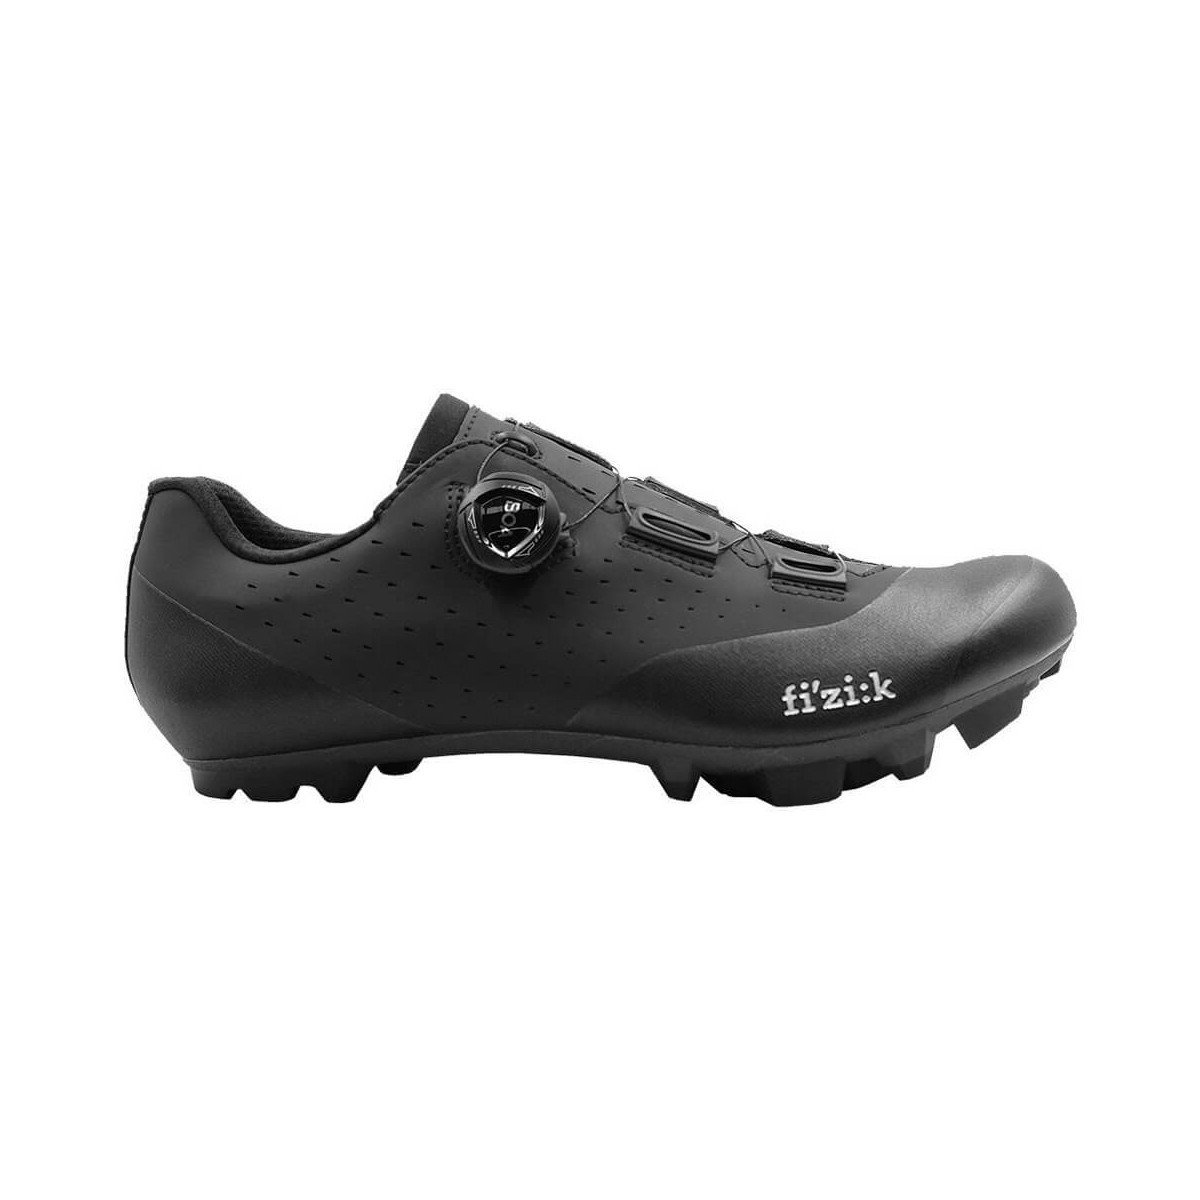 Photos - Cycling Shoes Fizik Vento X3 Overcurve Black Shoes, Size 44 - EUR VEX3OCMI1-1010/44 